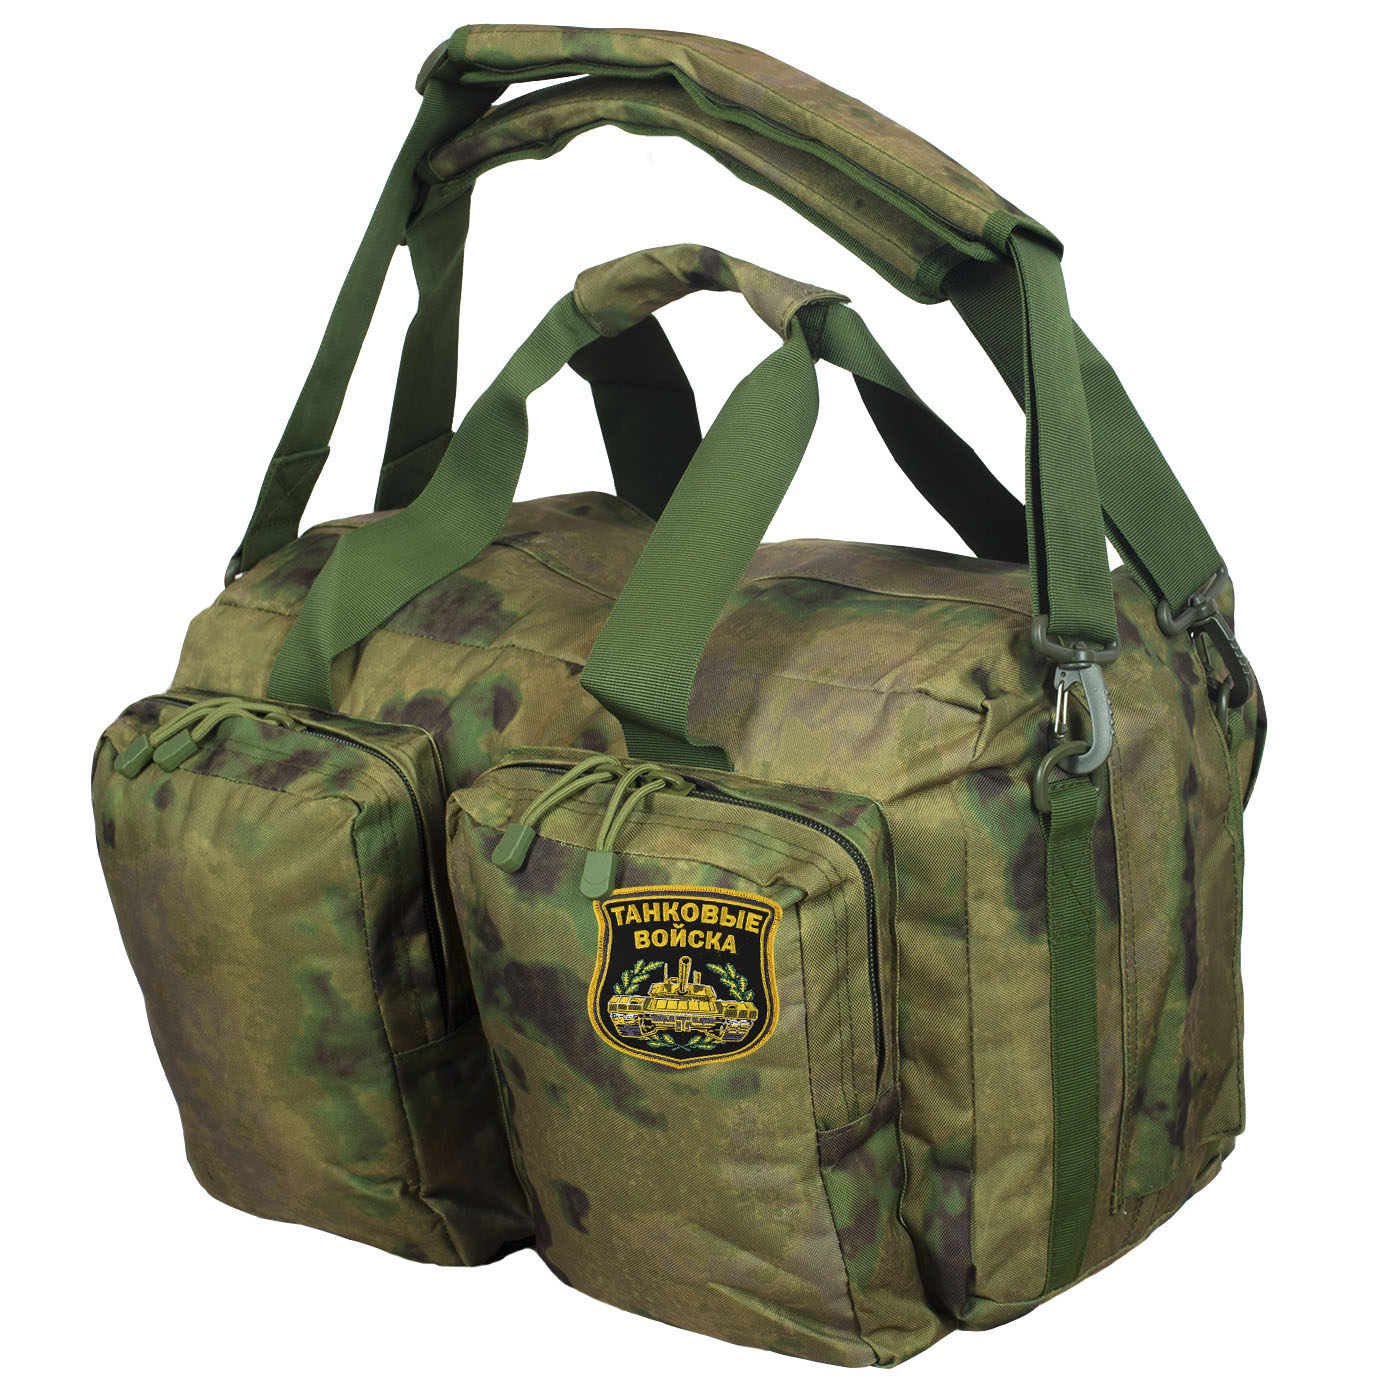 Камуфлированная заплечная сумка с нашивкой Танковые Войска 